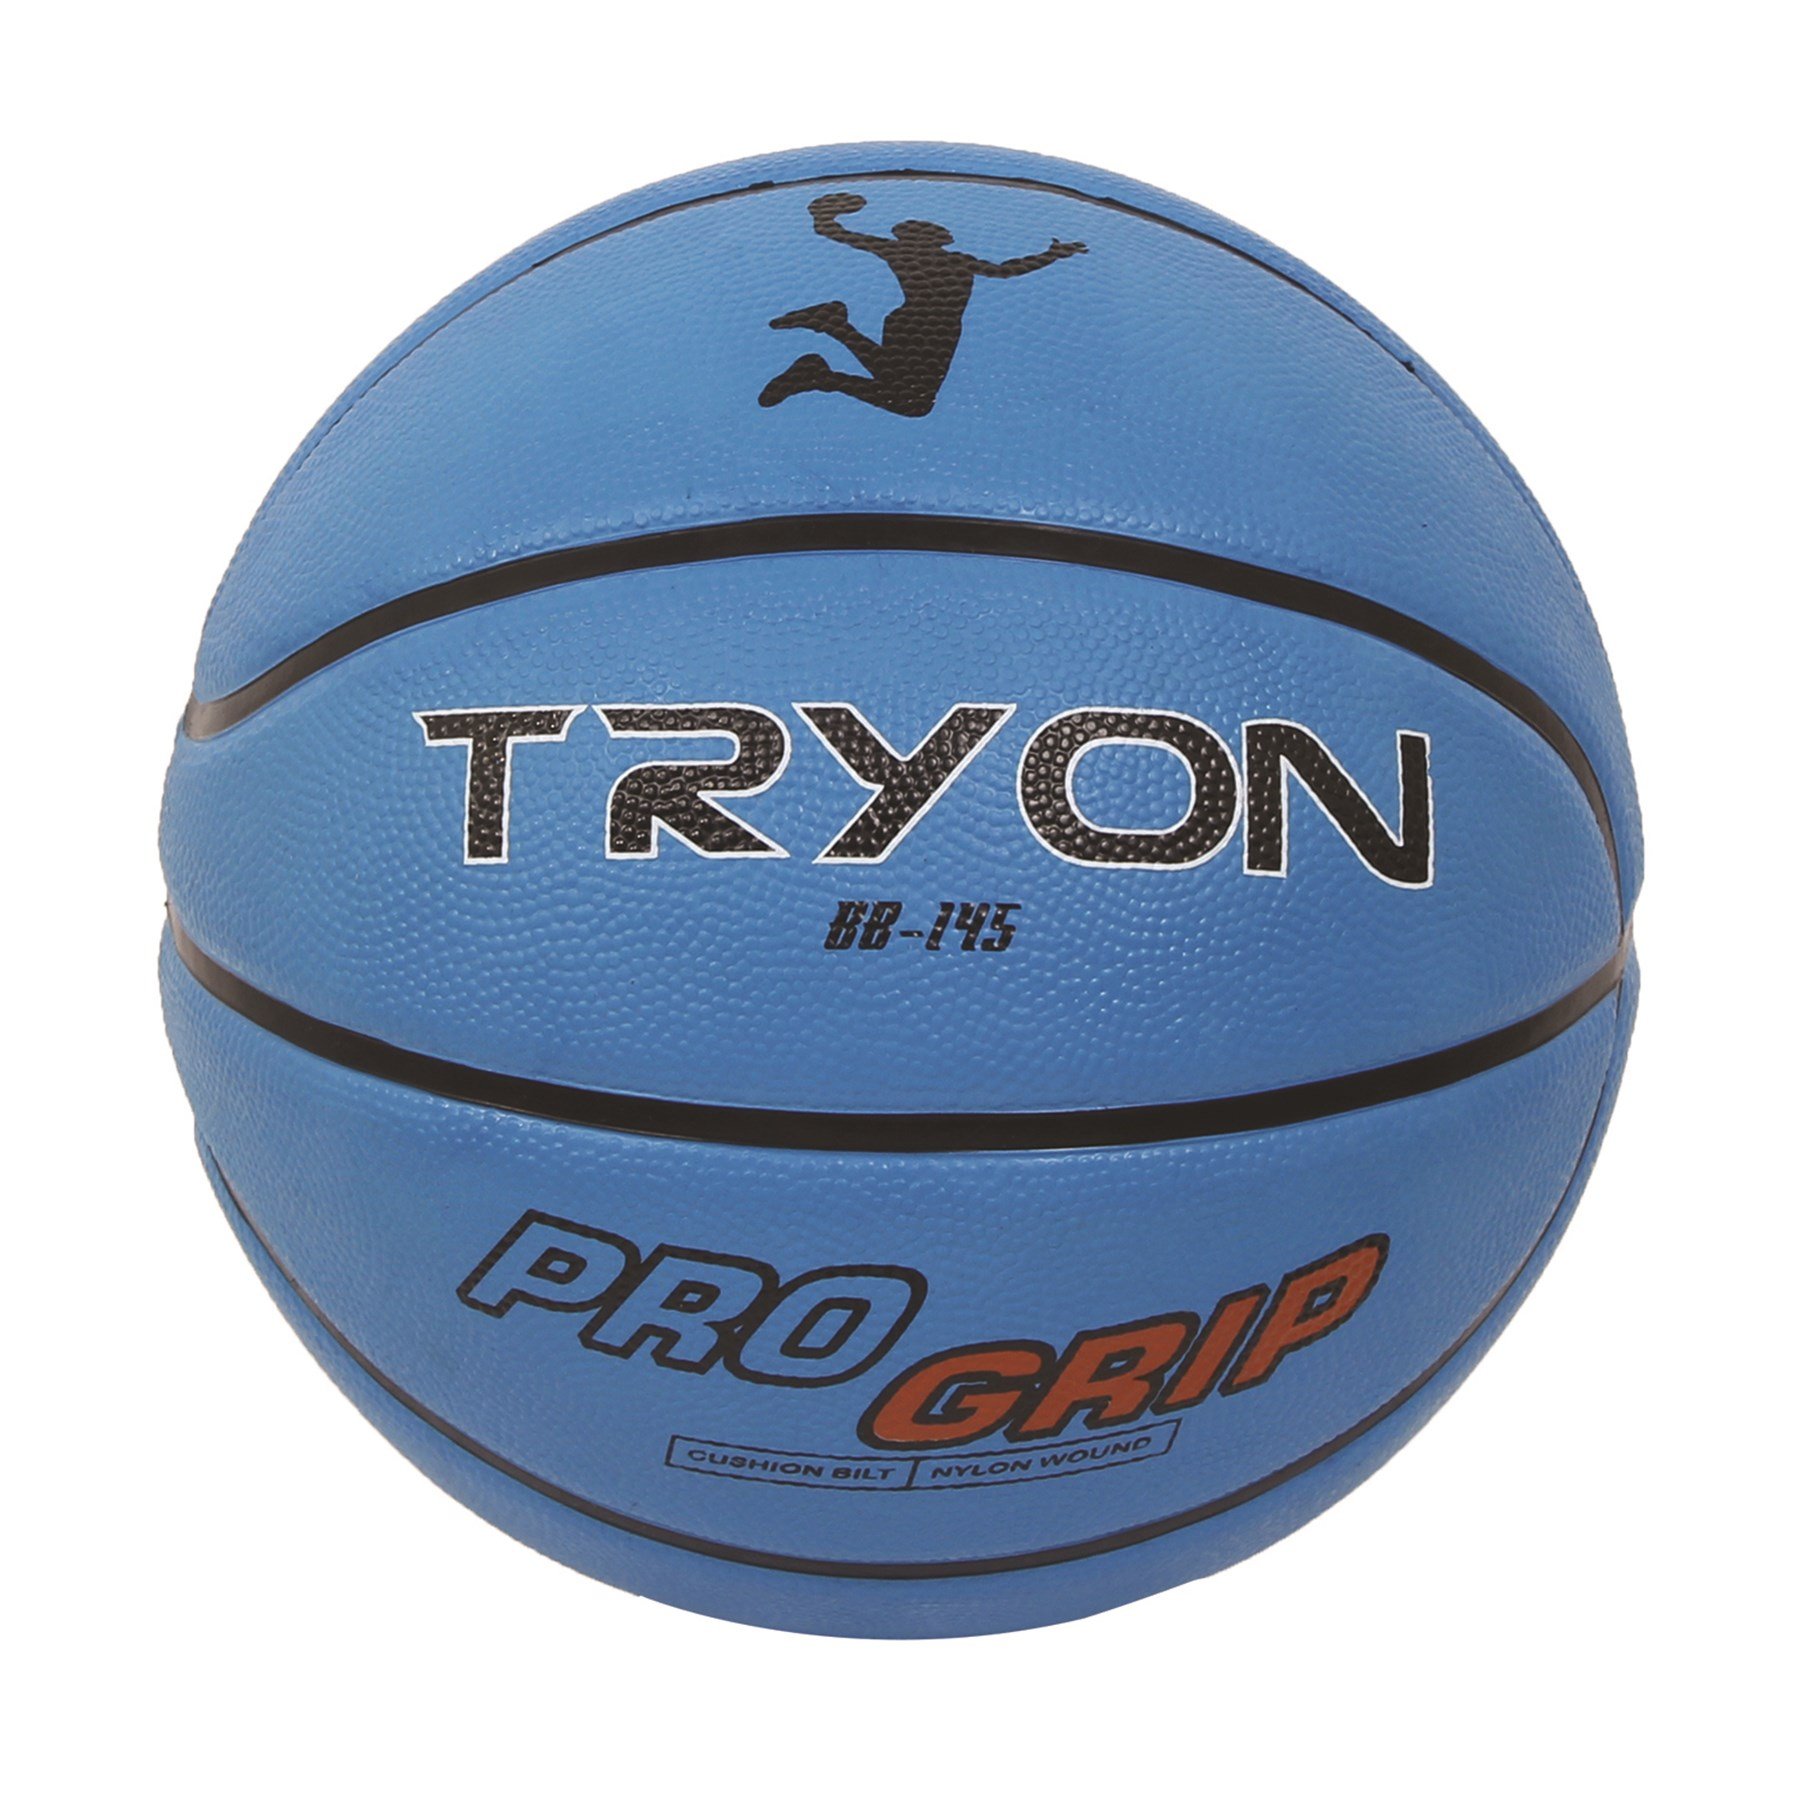 Tryon Basketbol Topu Bb-145 7 No